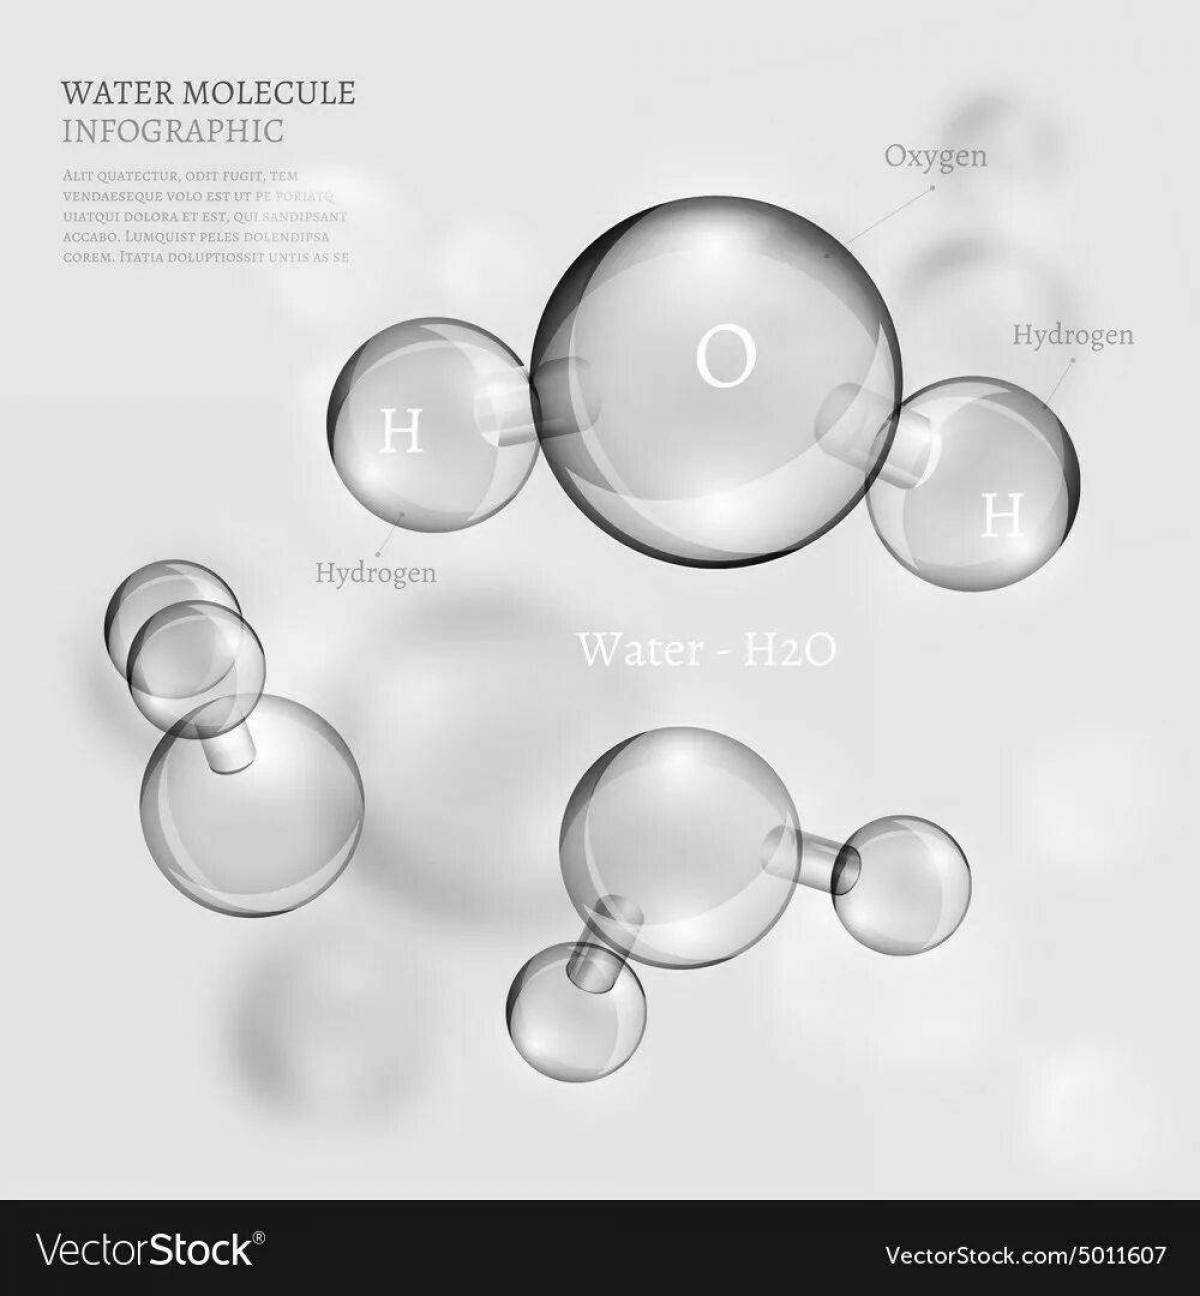 Attractive water molecule coloring book